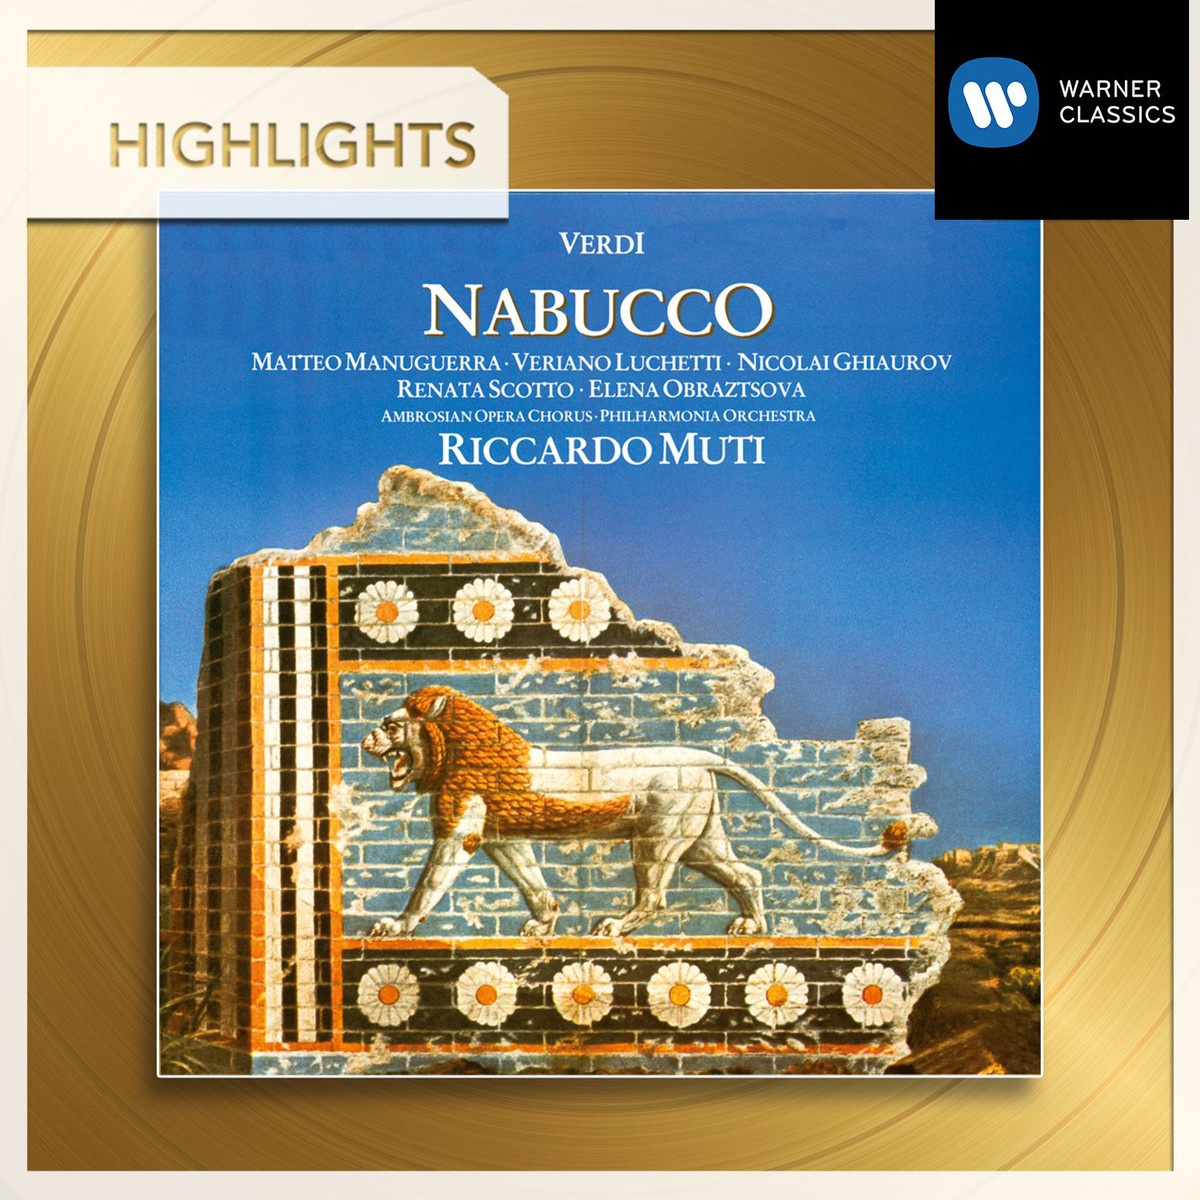 Nabucco (1986 Digital Remaster), Part 2, Scene 2, Scena e Finale II: Sapressan gl'istanti d'un 'ira fatale..